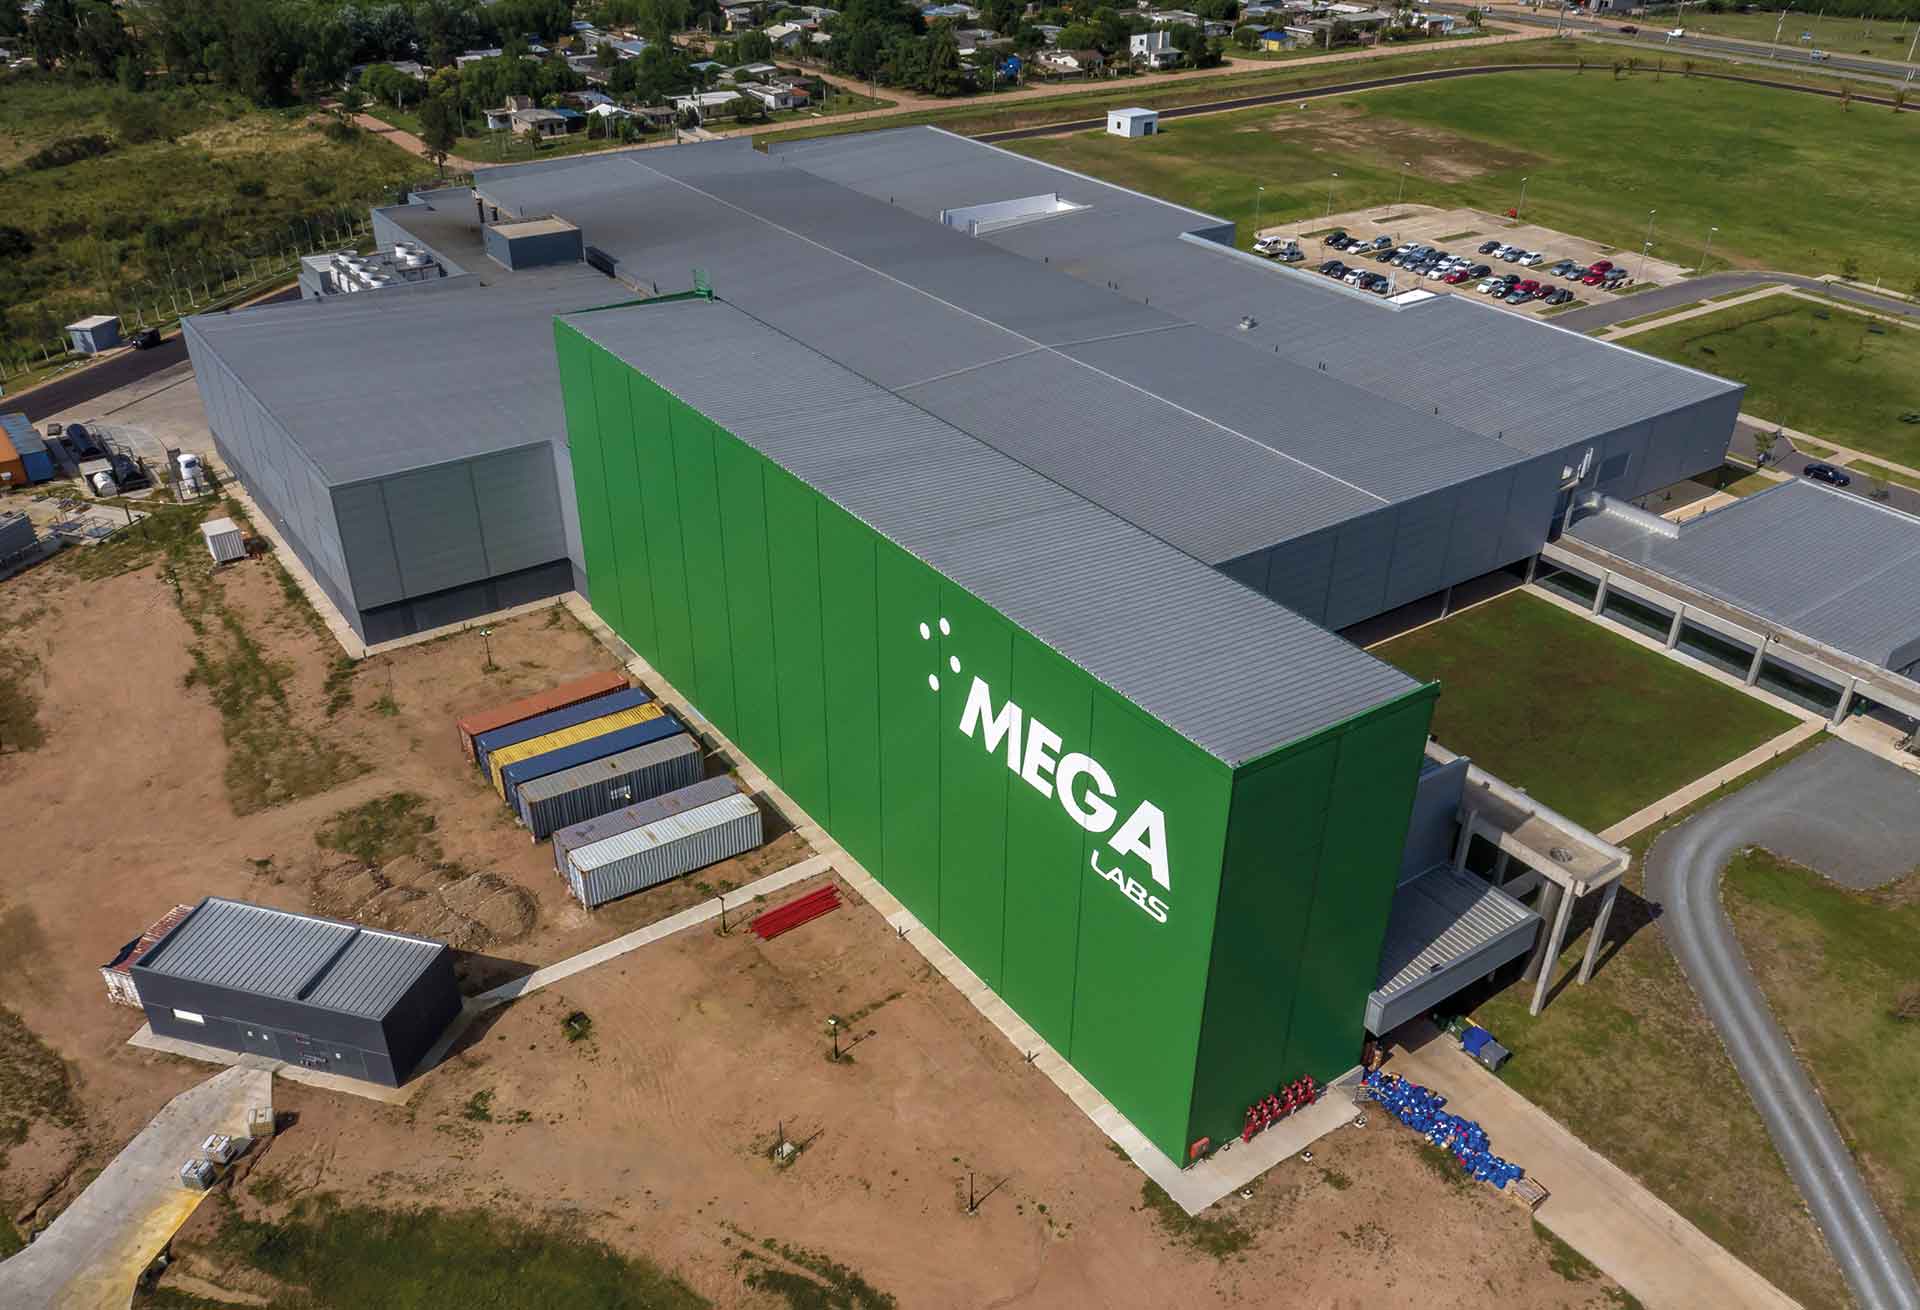 A empresa Mega Pharma confia na Mecalux para automatizar o seu armazém